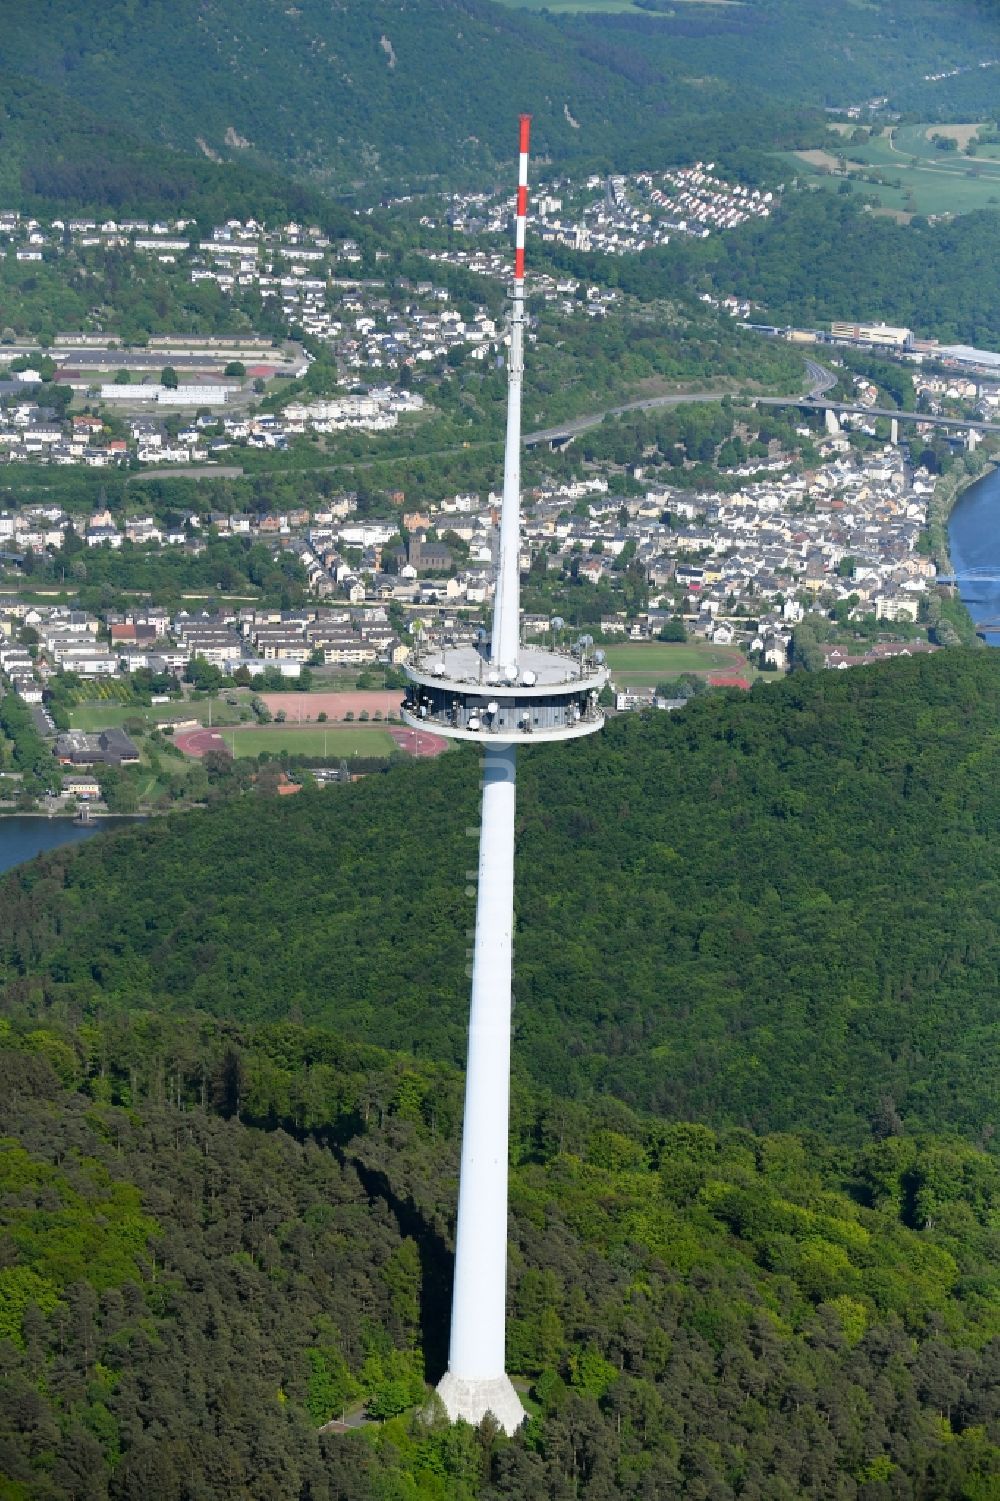 Koblenz aus der Vogelperspektive: Fernmeldeturm und Fernsehturm Kühkopf in Koblenz im Bundesland Rheinland-Pfalz, Deutschland